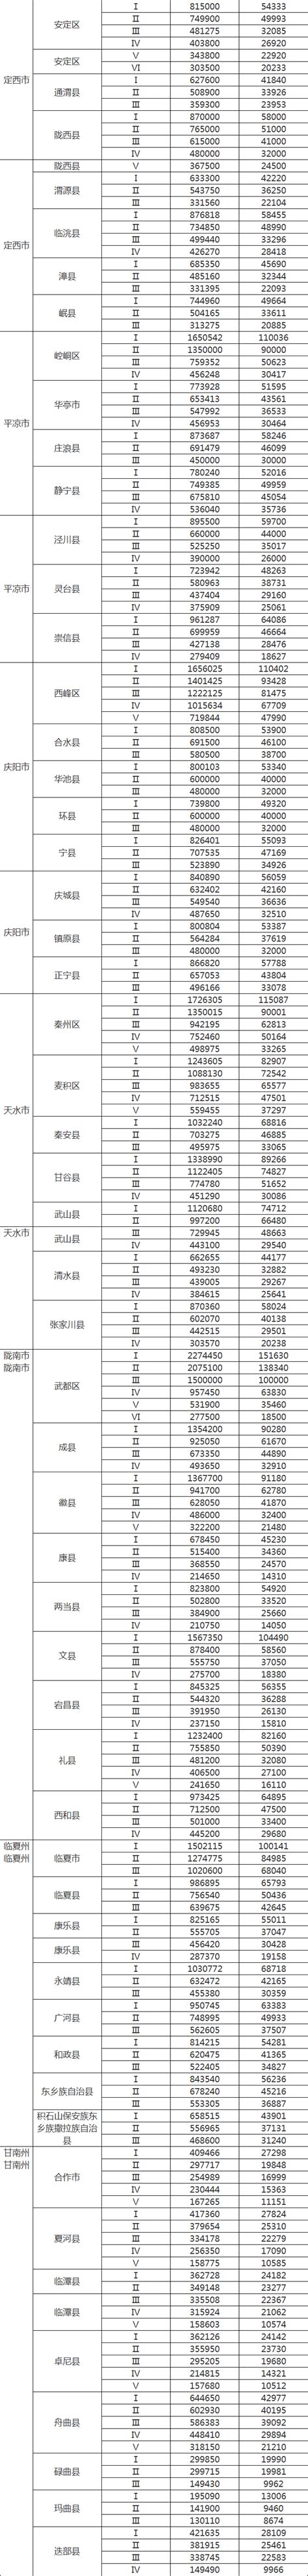 关于调整湖南省征地补偿标准的通知-湘阴县政府网